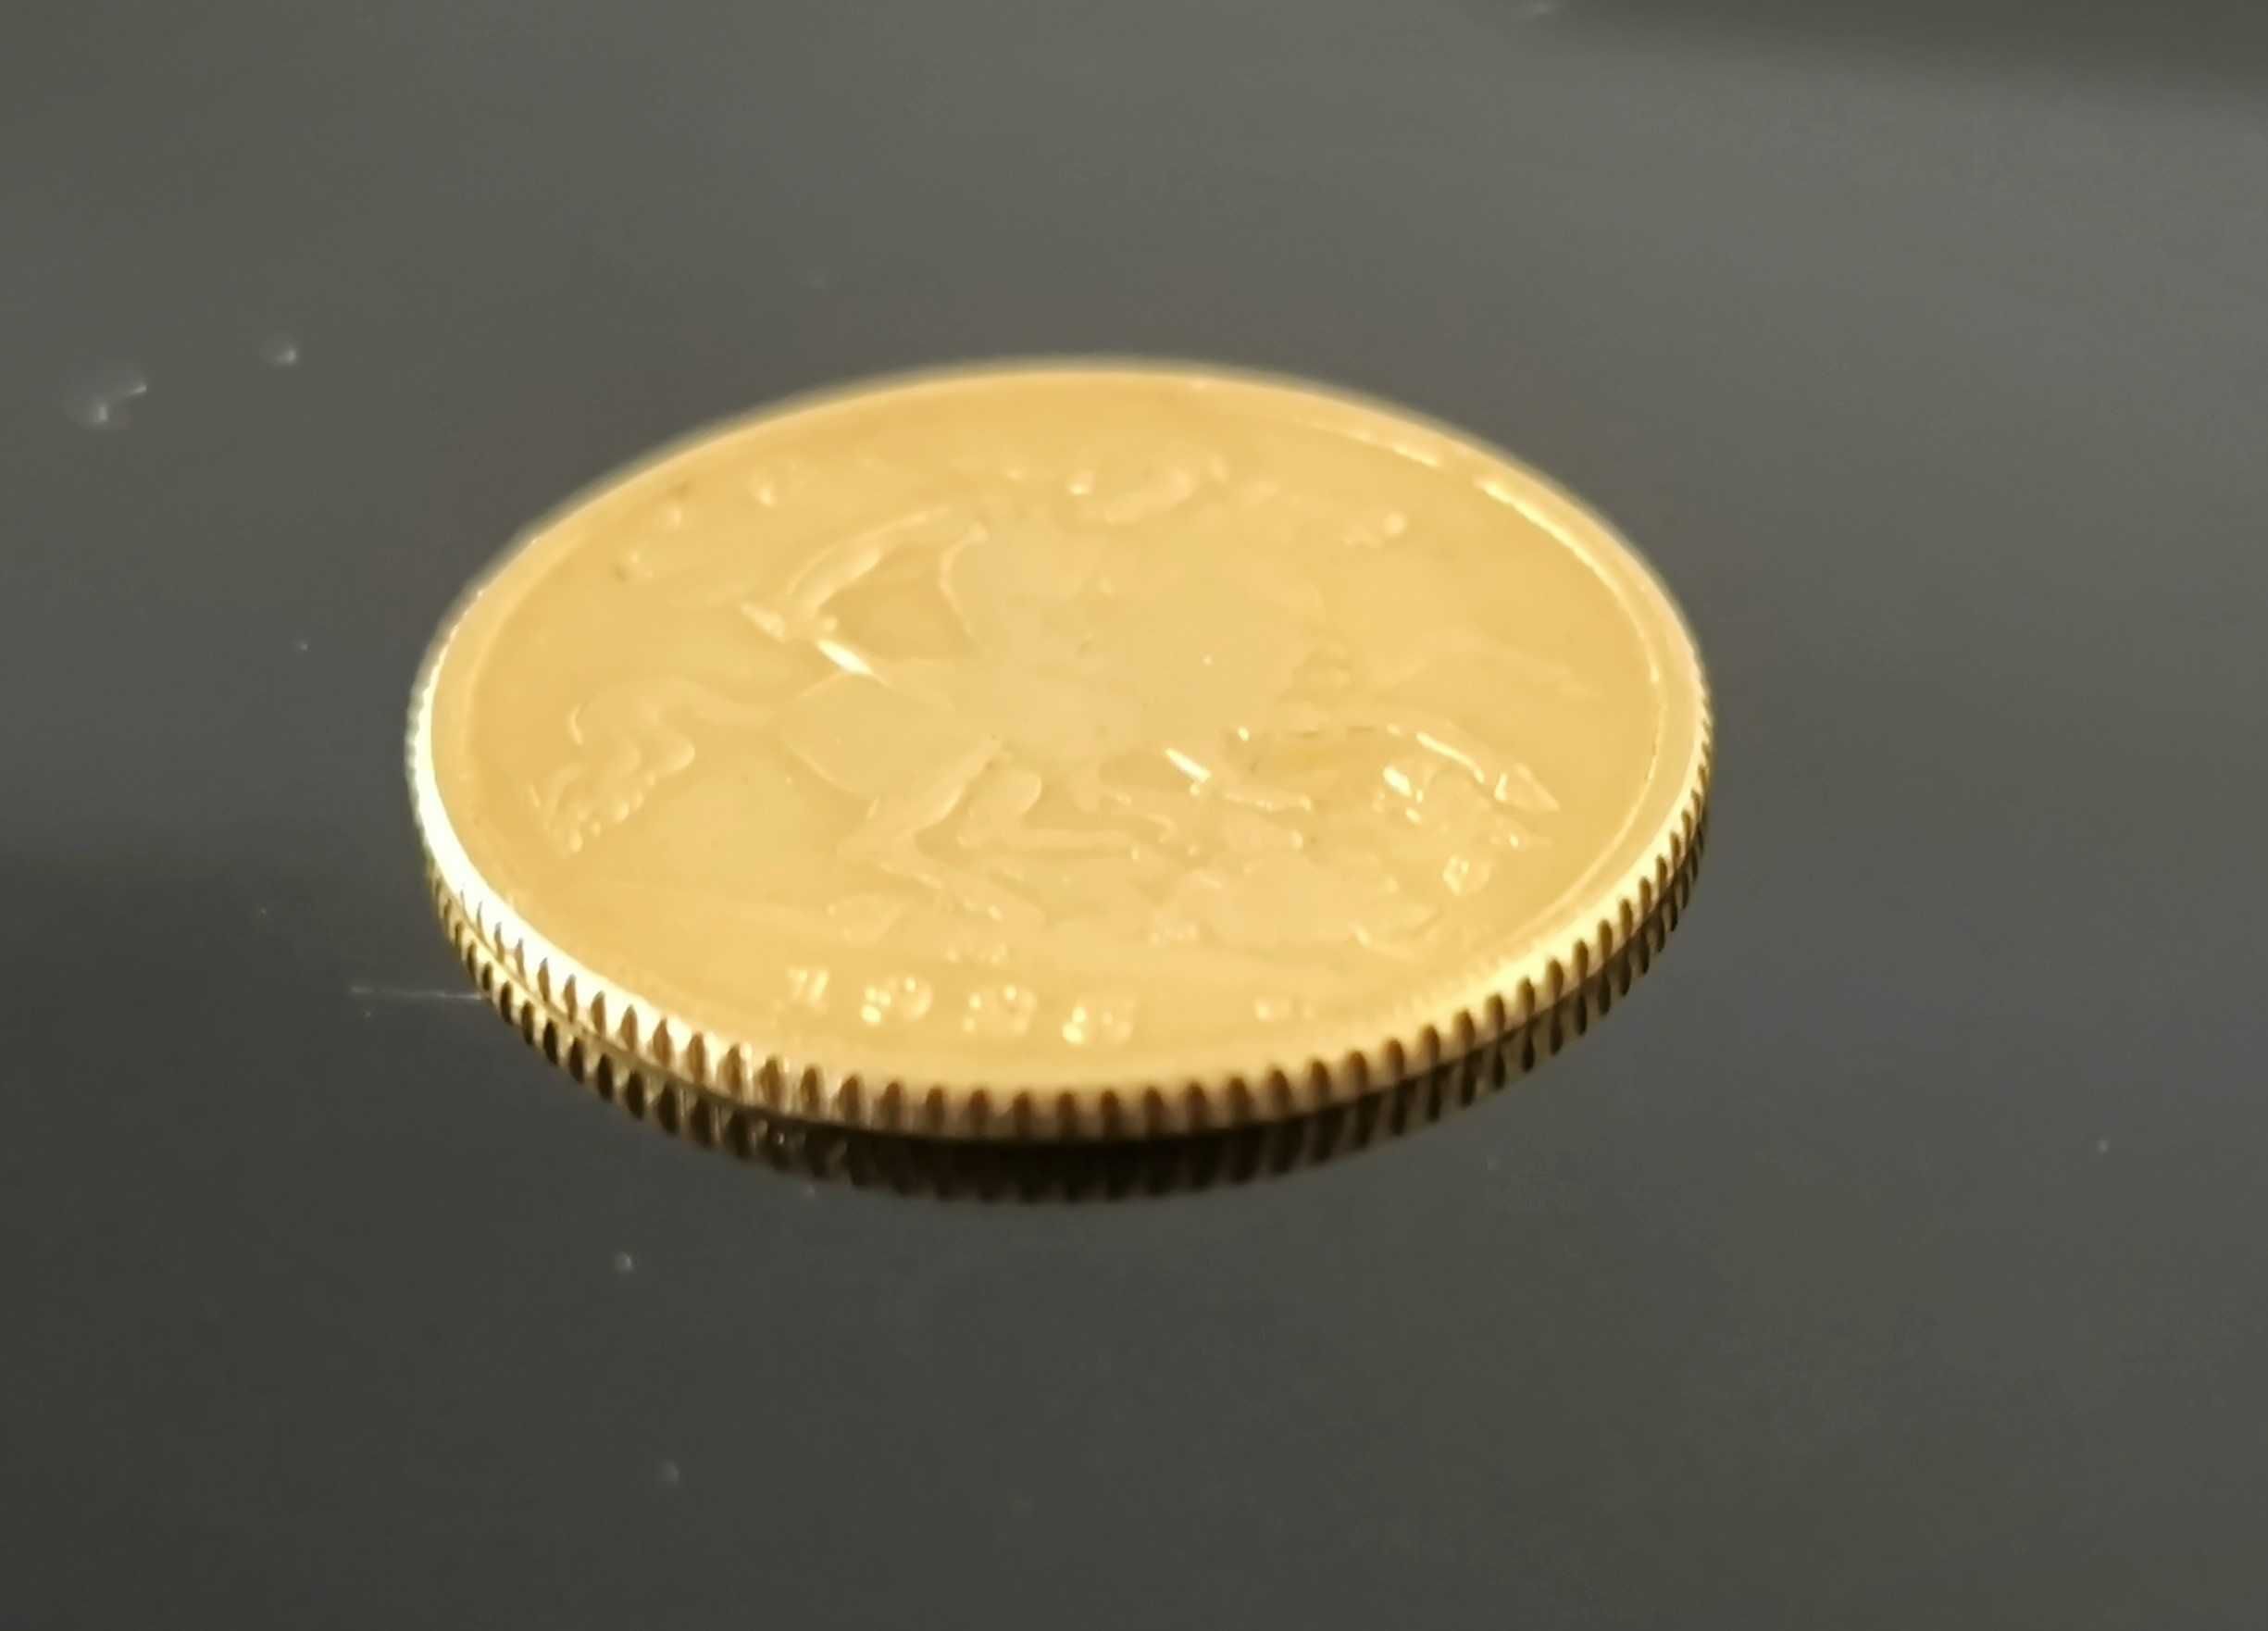 Meia libra de ouro Sovereign King George V de 1925